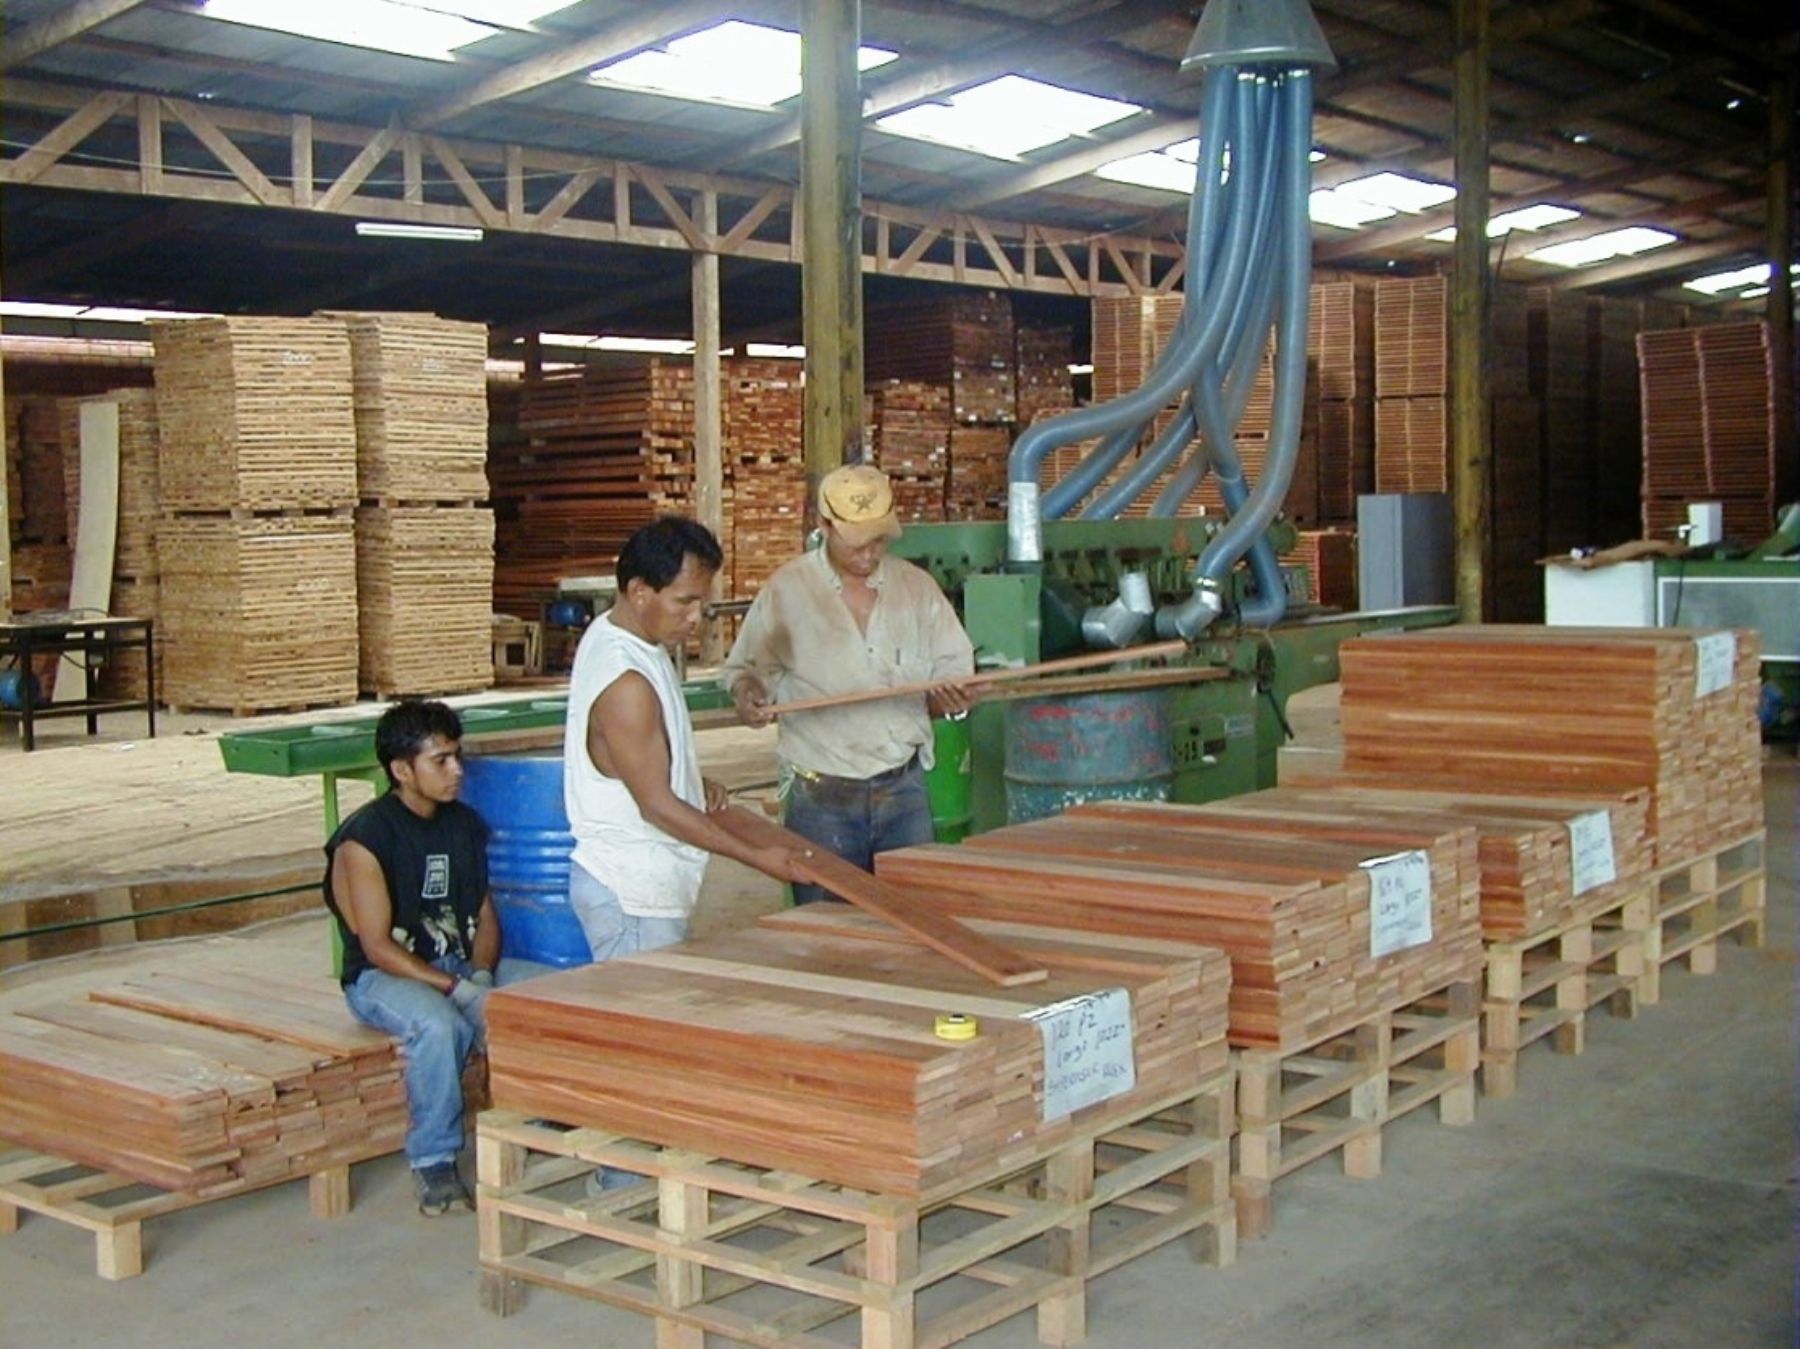 Con el futuro parque industrial habrá una mejor fiscalización de la madera y control de la tala ilegal.